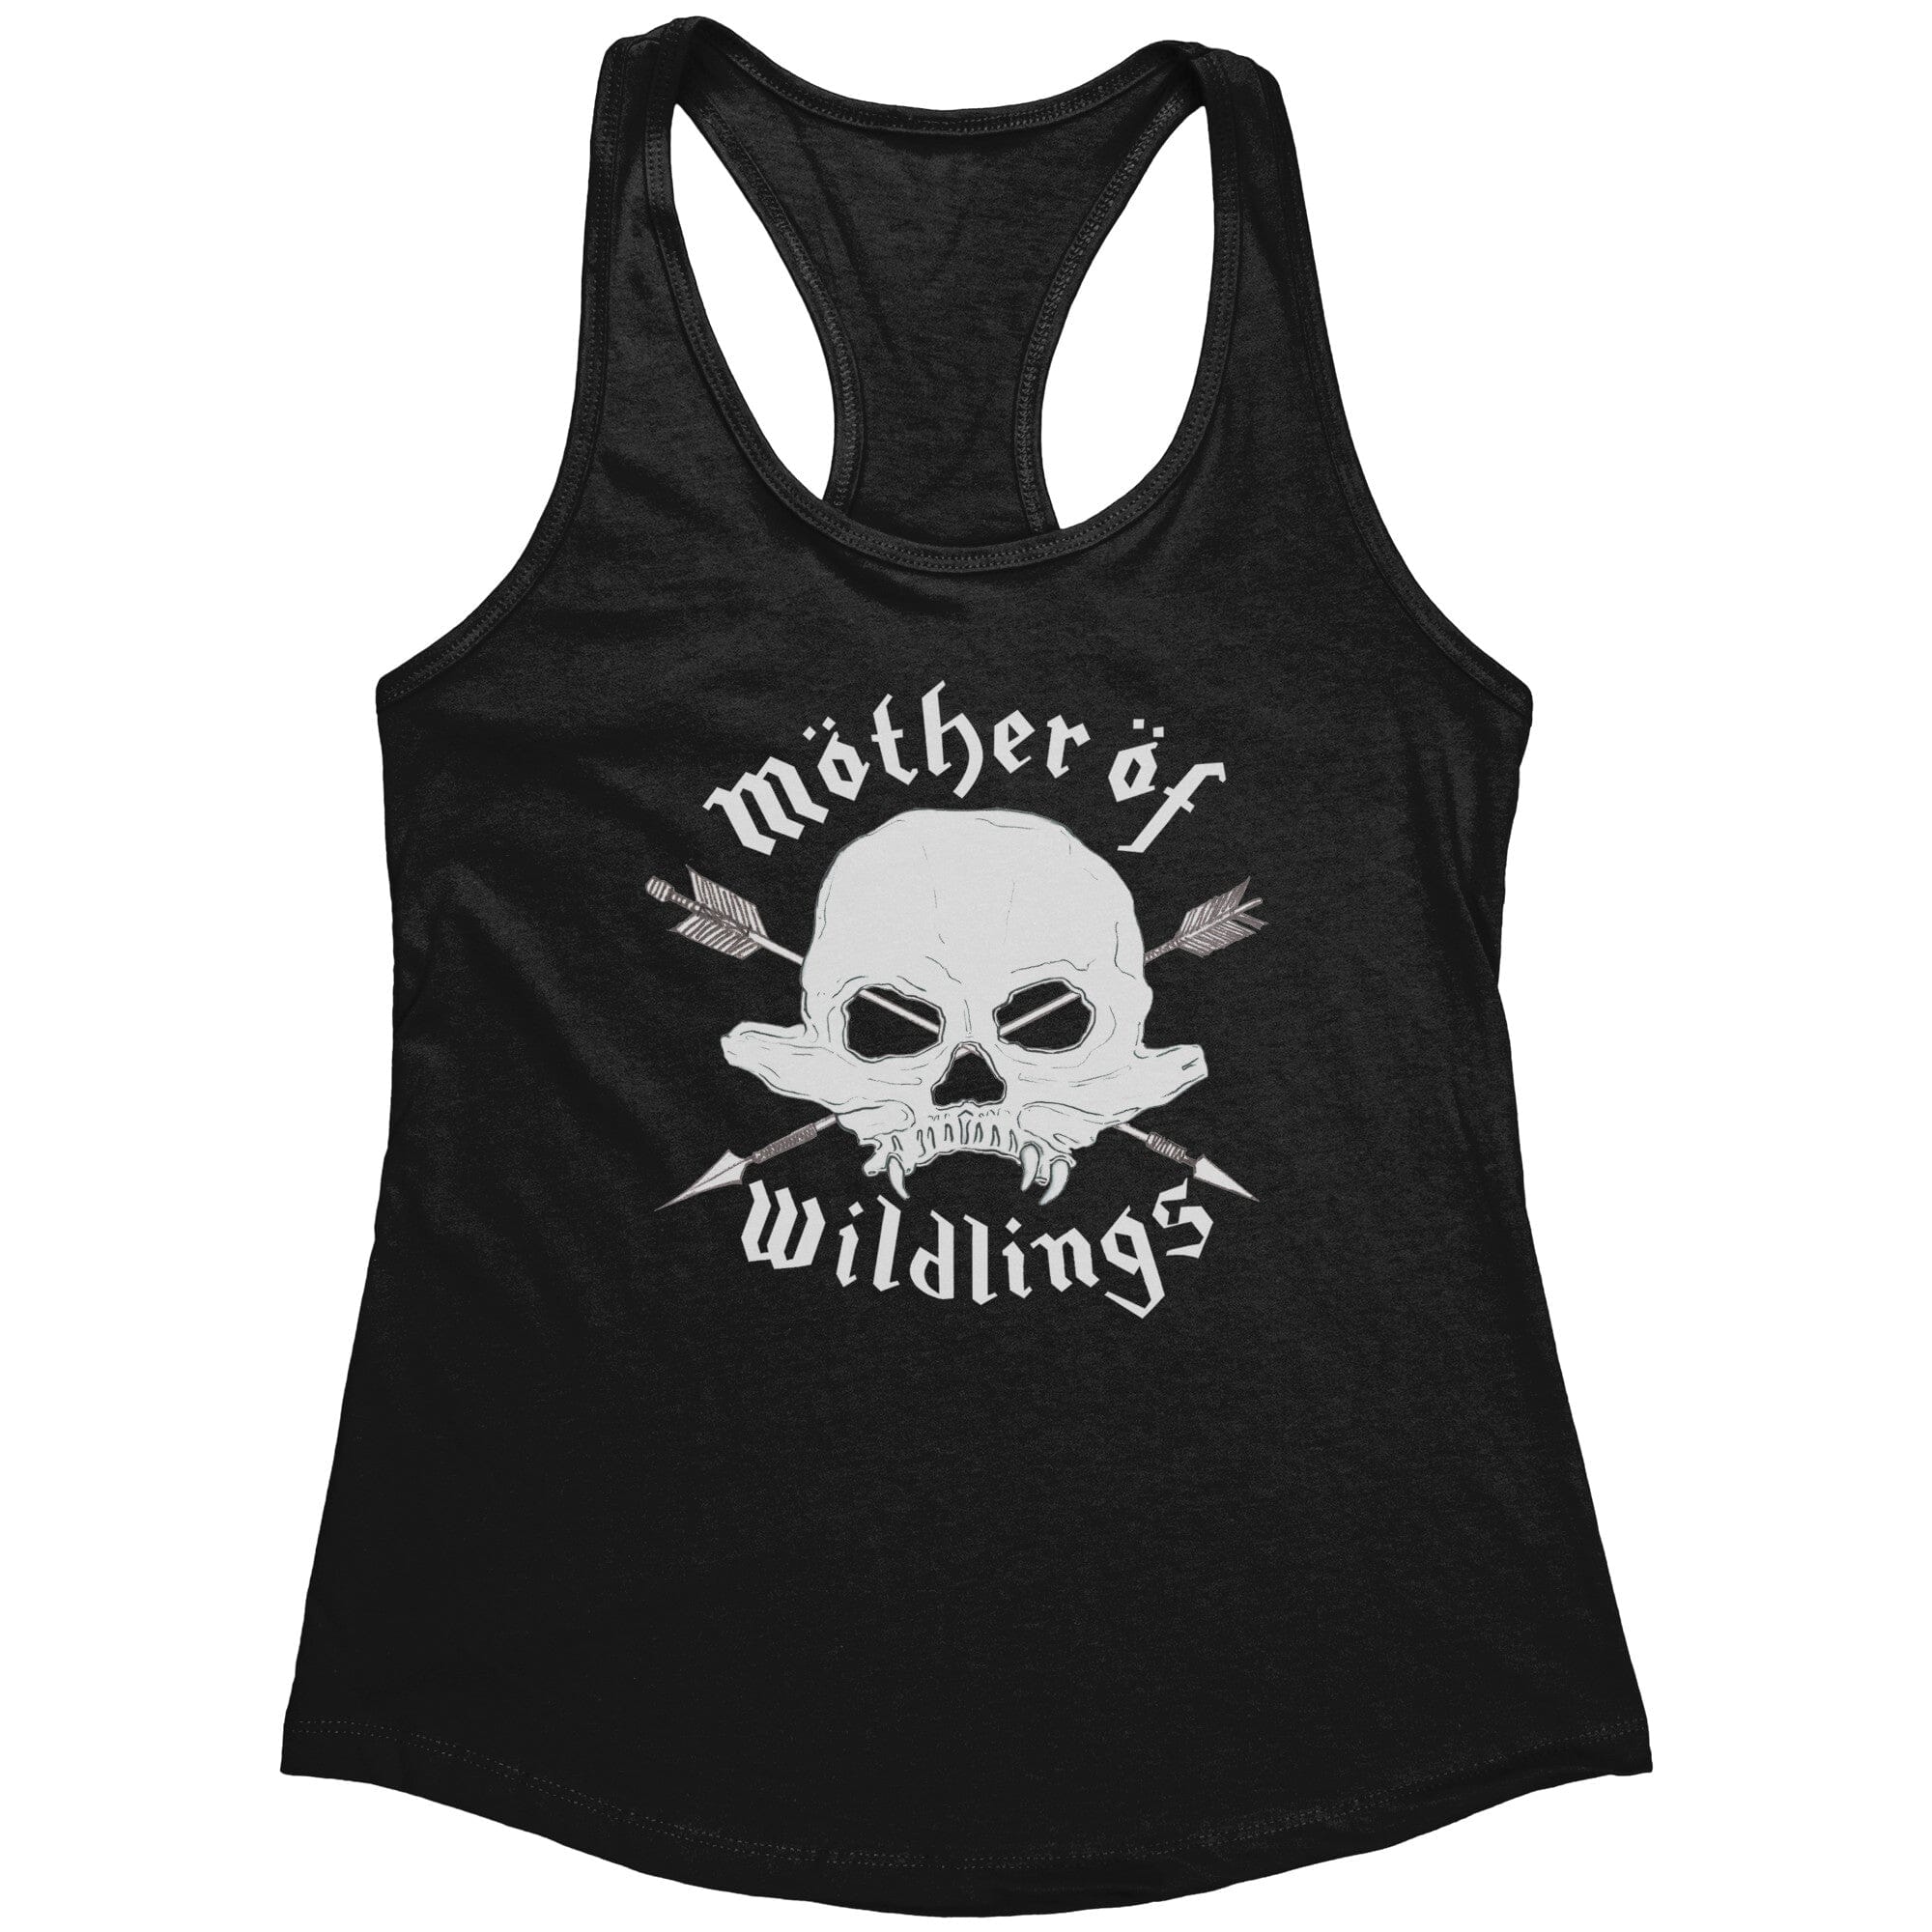 Mother of wildlings -TL23